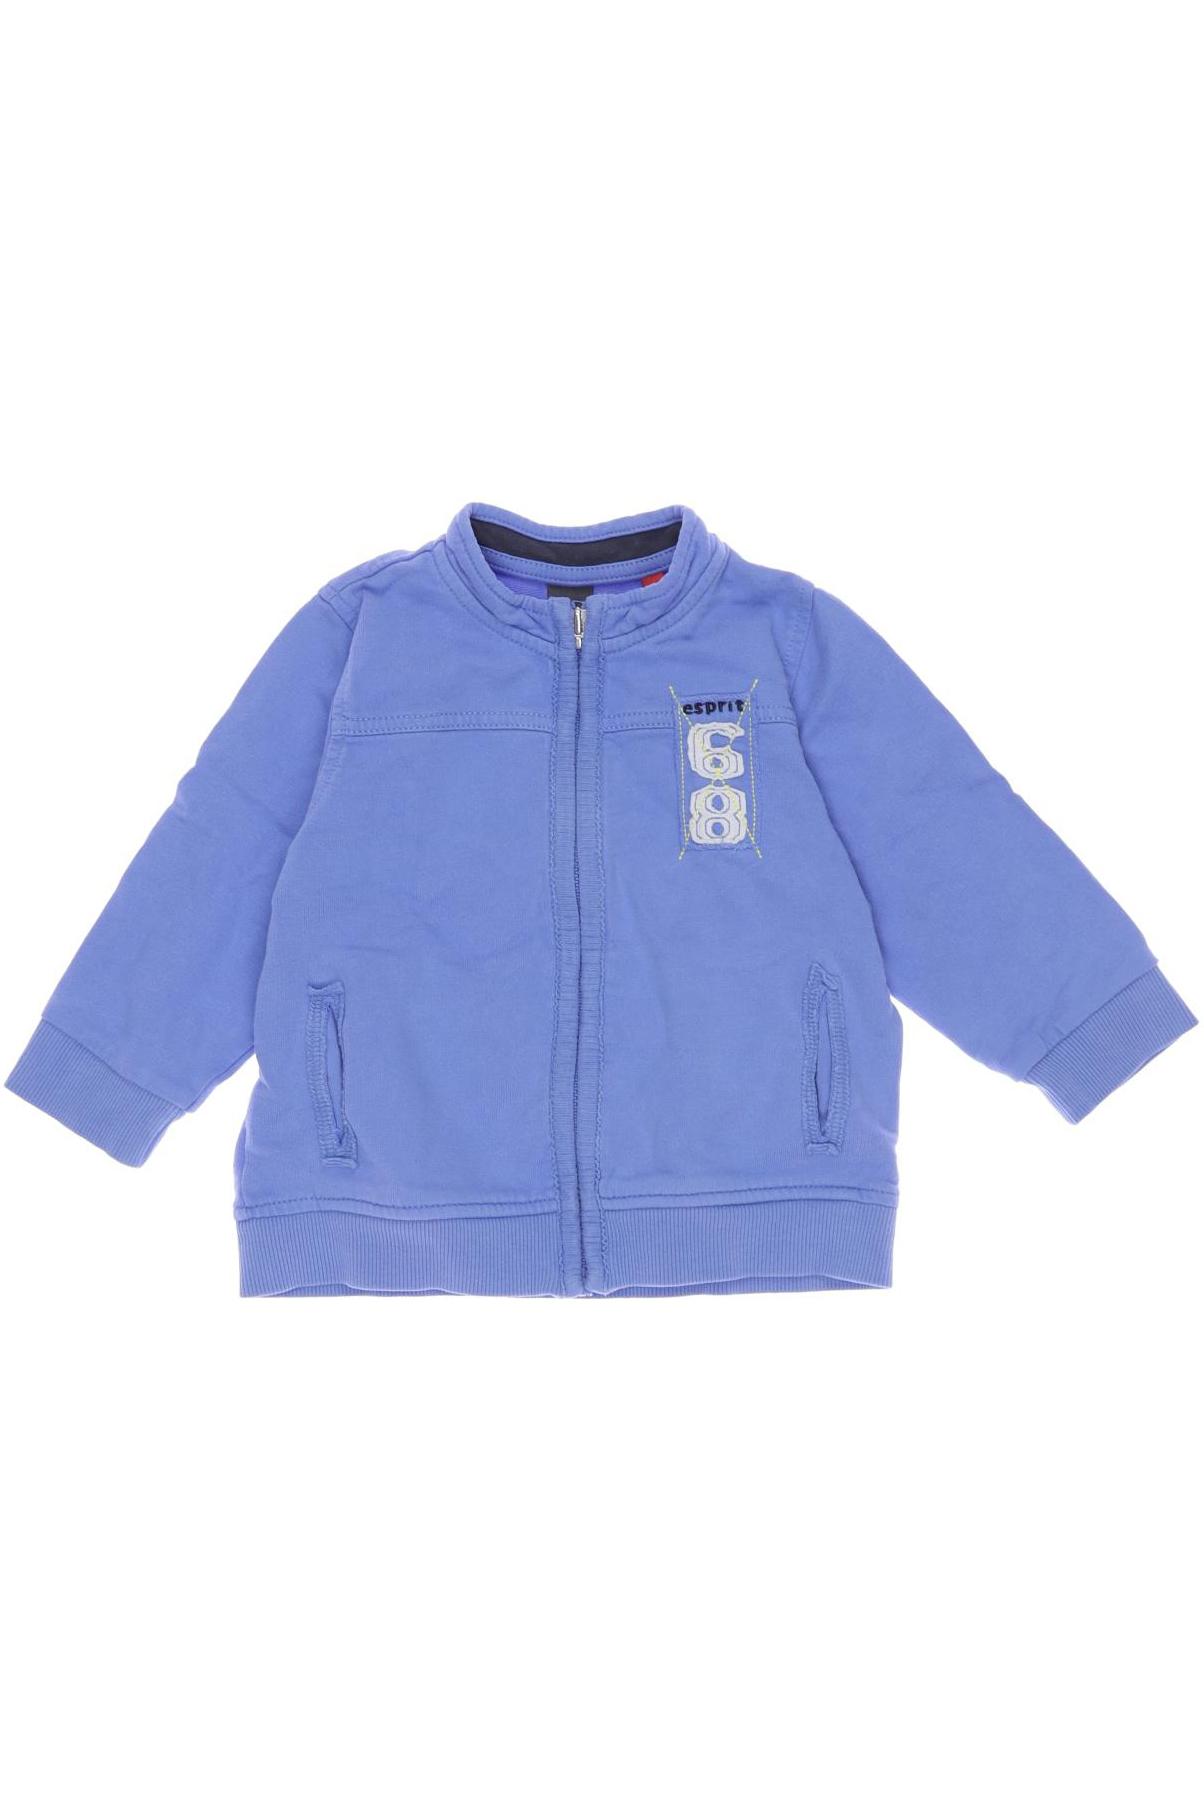 Esprit Herren Hoodies & Sweater, blau, Gr. 80 von Esprit